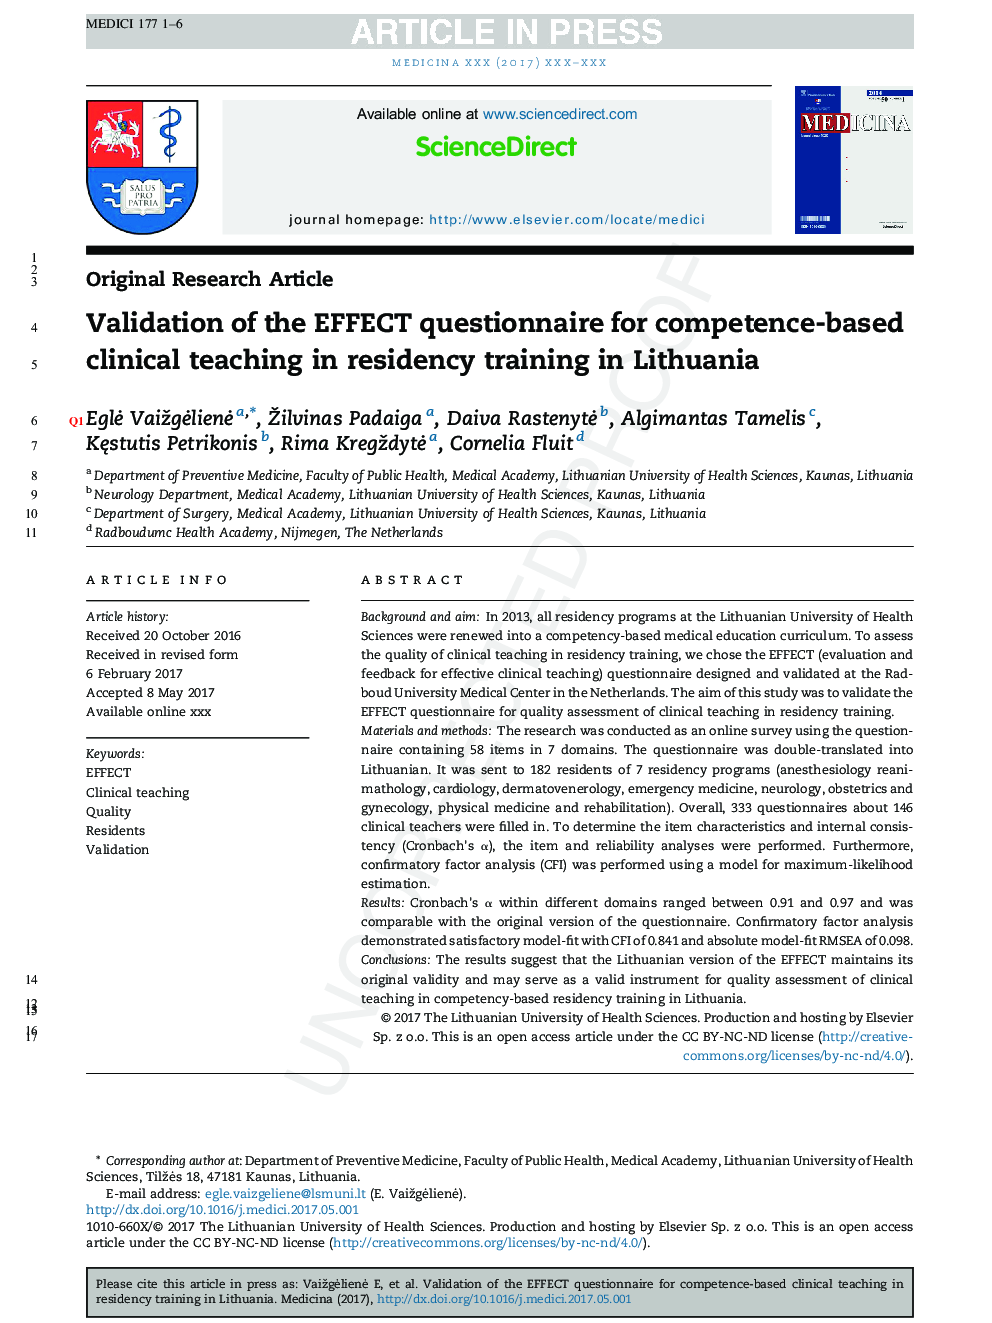 اعتبار سنجی تأثیر پرسشنامه برای آموزش بالینی مبتنی بر شایستگی در آموزش اقامت در لیتوانی 